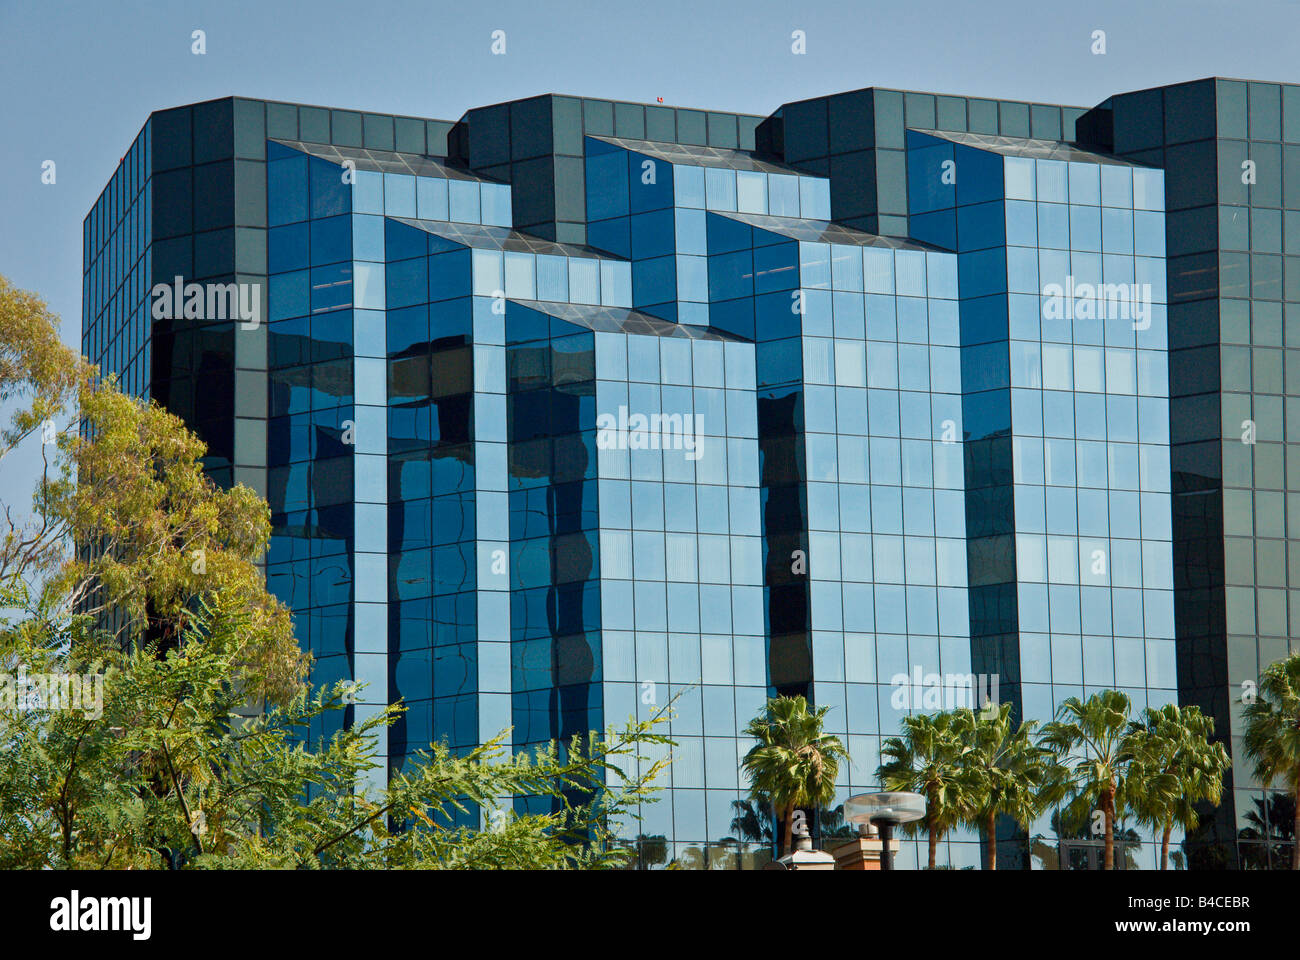 Irvine Büro Main Street architektonisches Glas außen nach oben bauen Irvine, Orange County, CA, Vereinigte Staaten Stockfoto